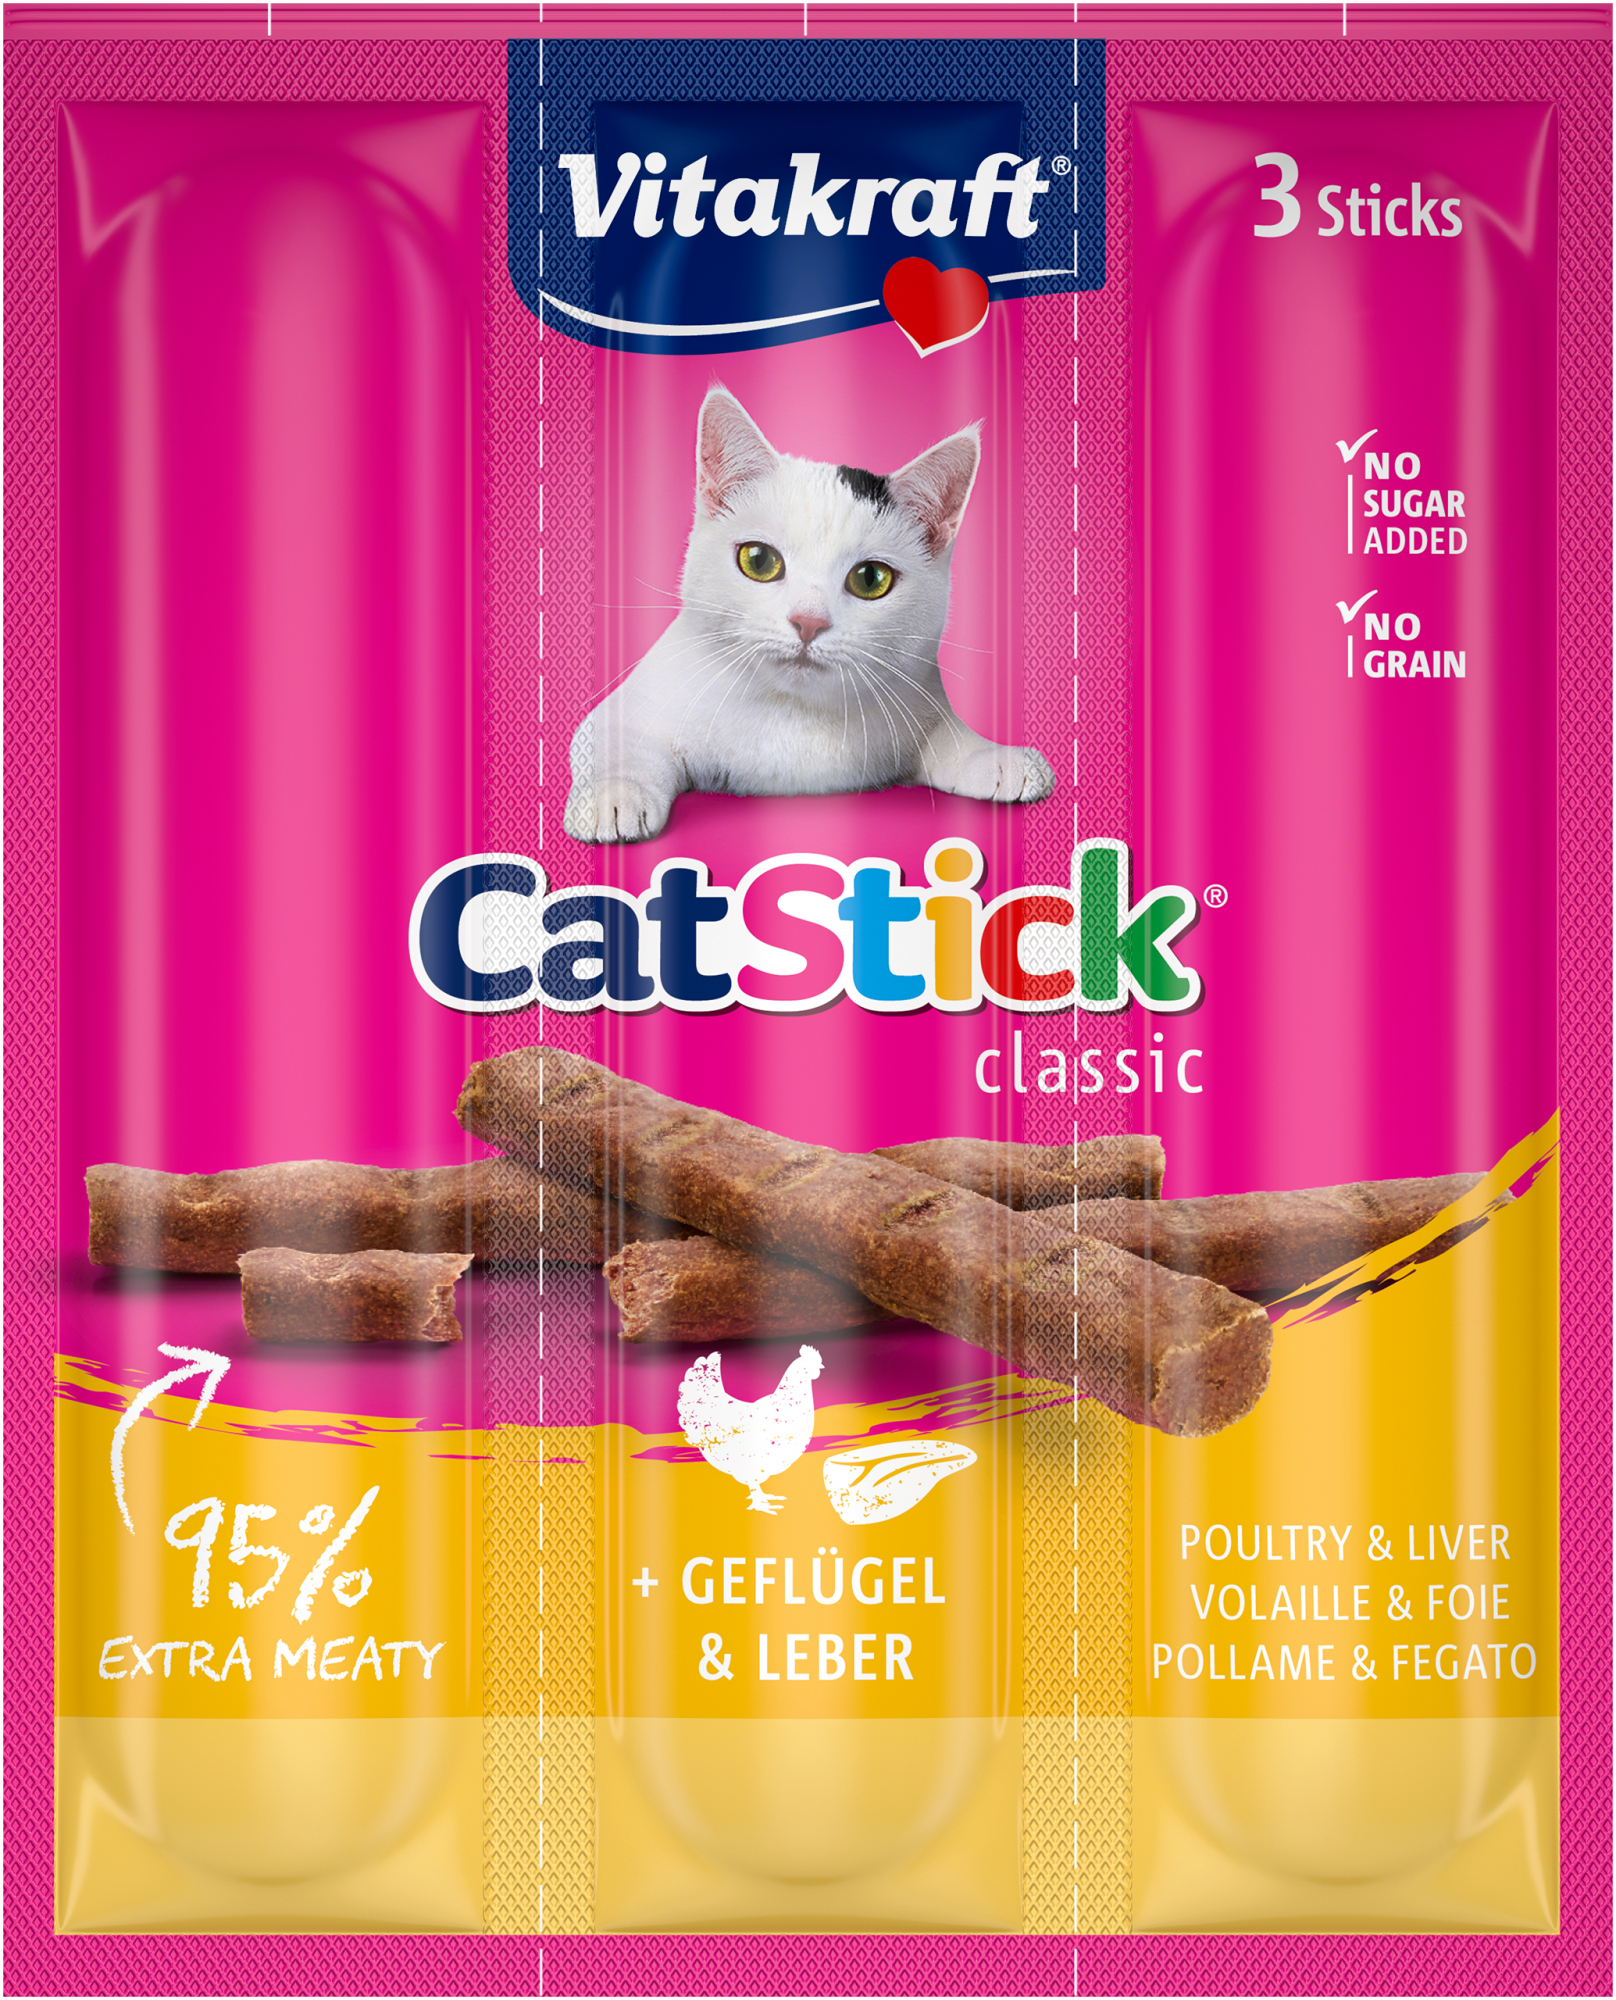 VITAKRAFT Cat-Stick mini - Friandise pour chat - plusieurs saveurs disponibles